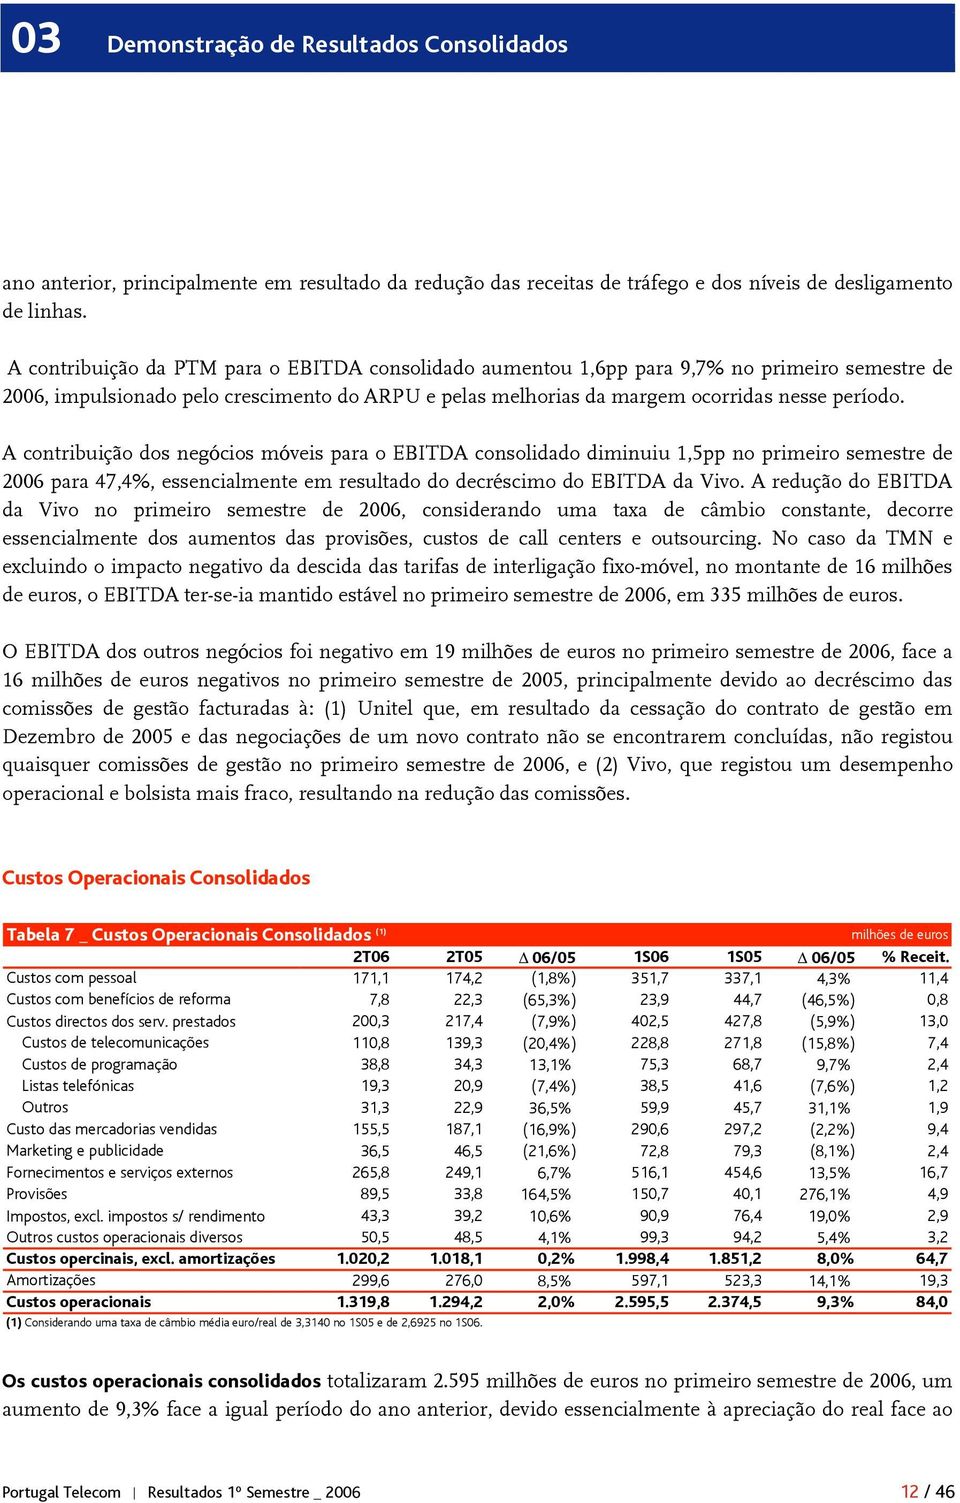 A contribuição dos negócios móveis para o EBITDA consolidado diminuiu 1,5pp no primeiro semestre de 2006 para 47,4%, essencialmente em resultado do decréscimo do EBITDA da Vivo.